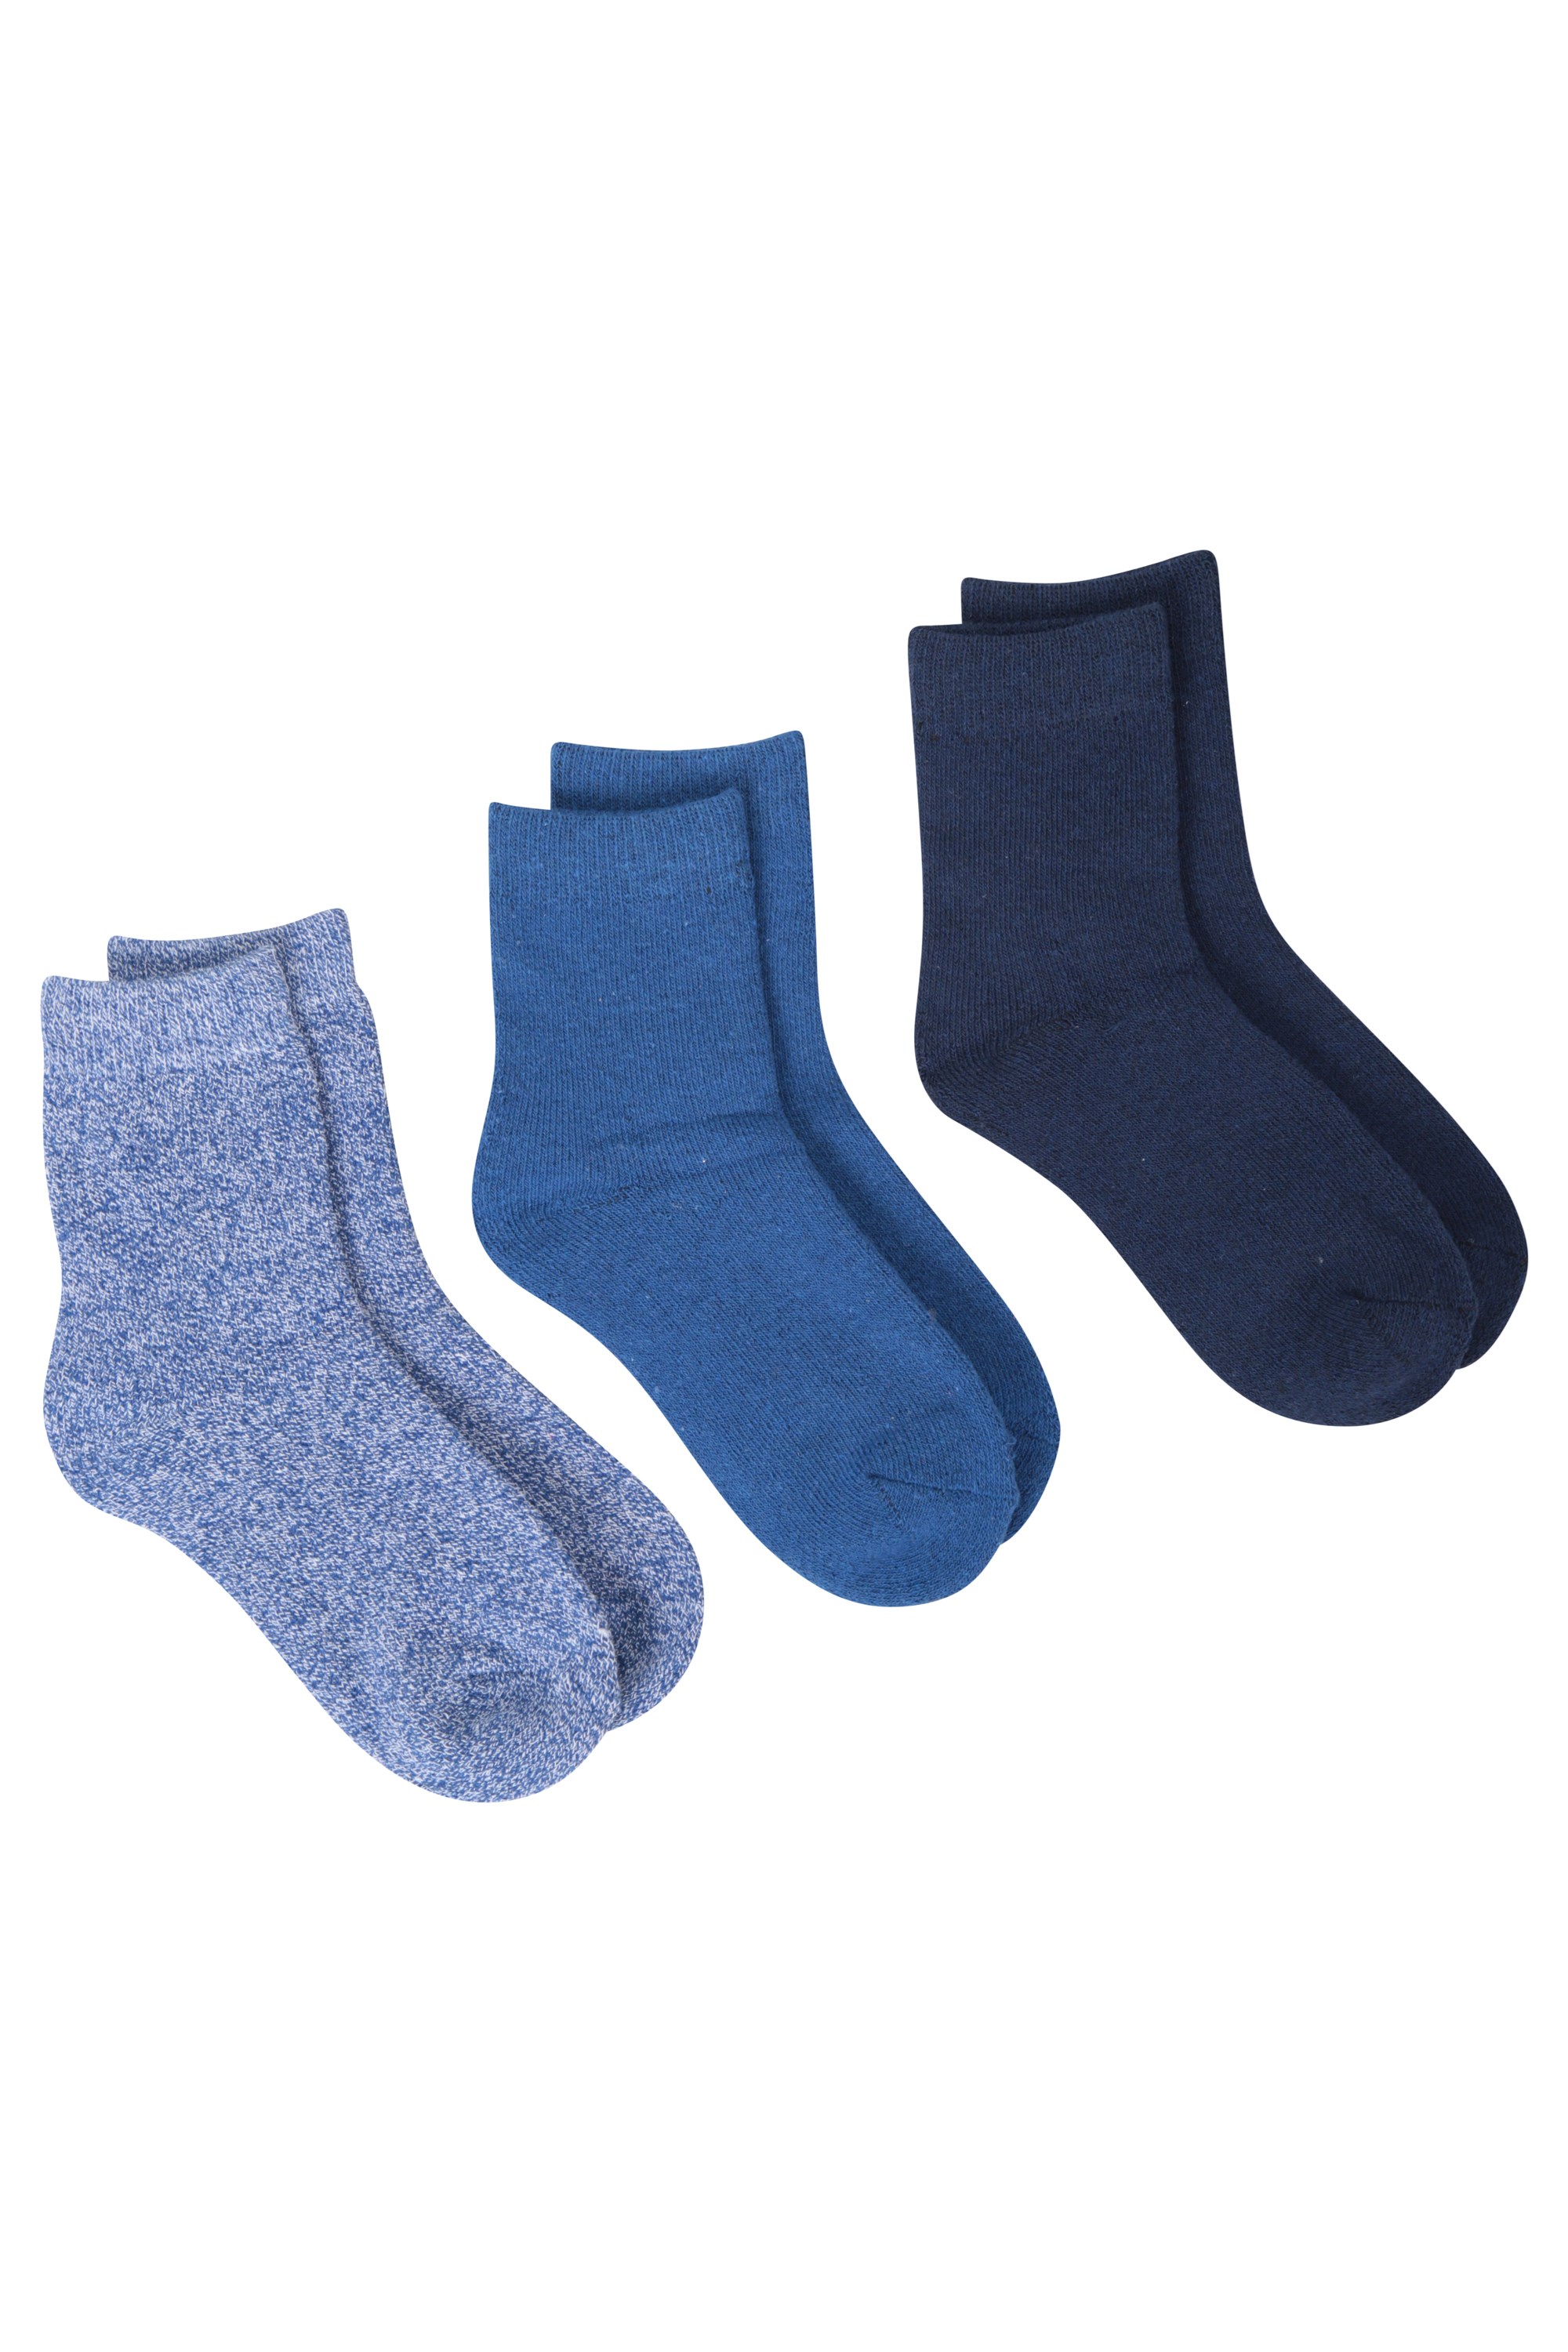 Outdoor Kids Mid-Calf Walking Socks 3-Pack - Blue